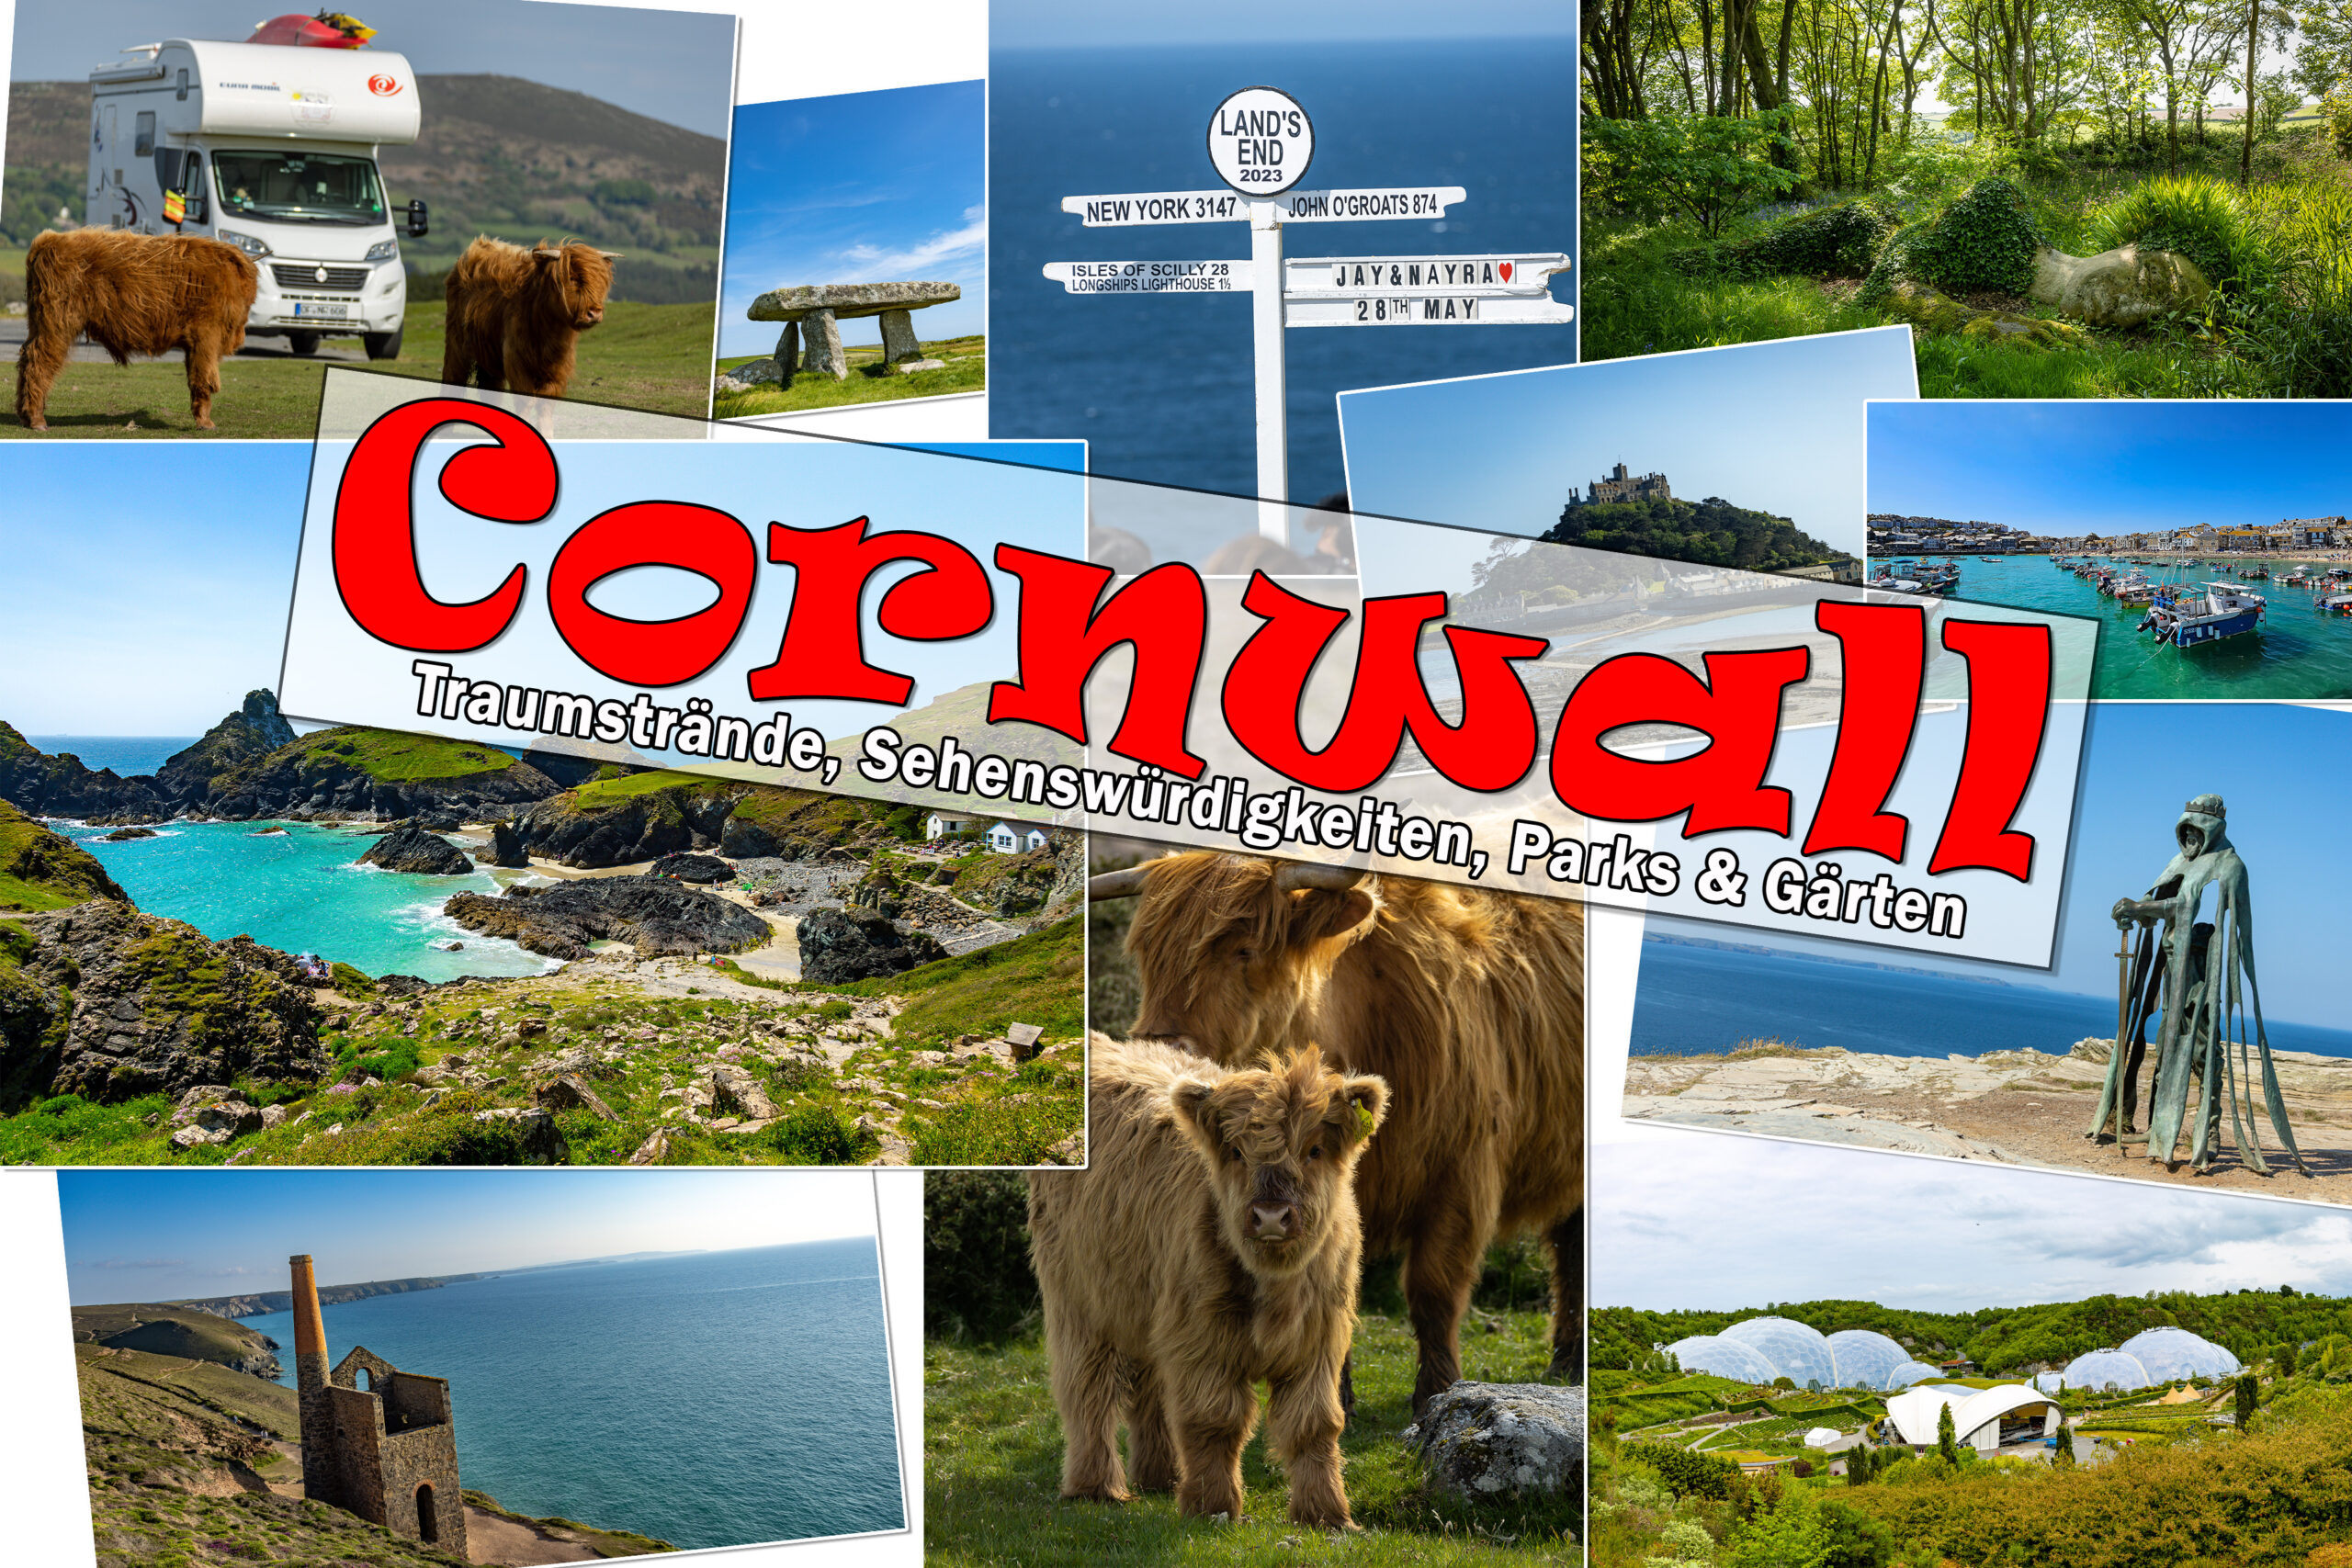 Cornwall News&Neuheiten - Südseestrände in England genießen